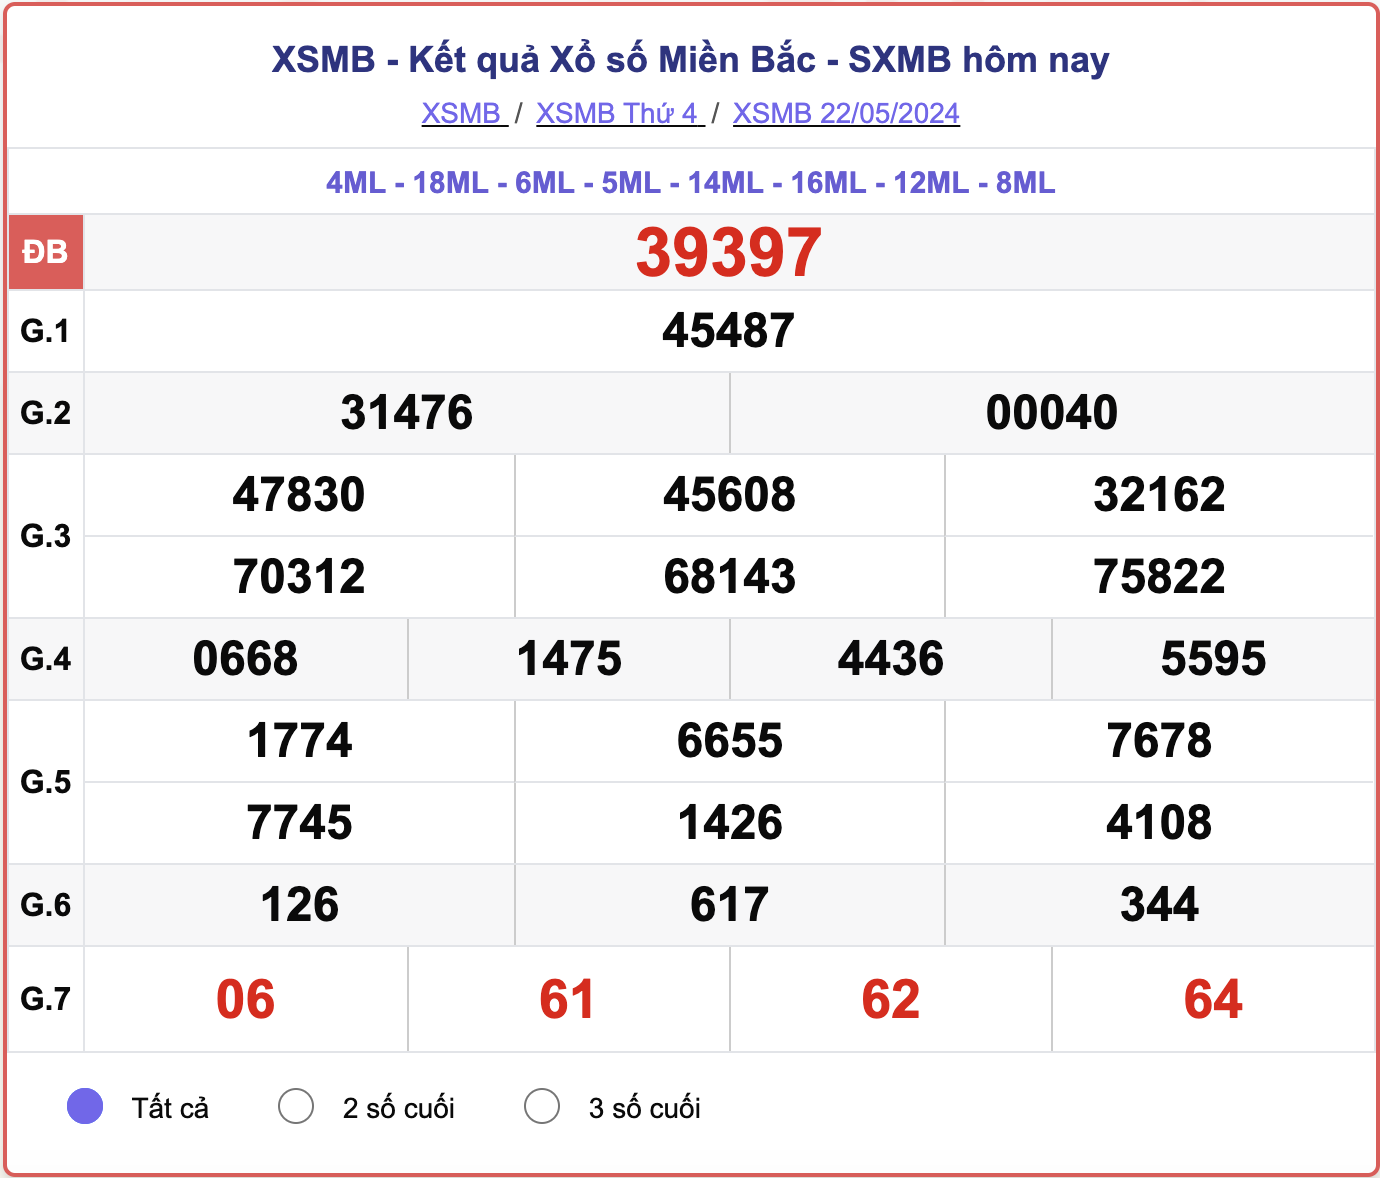 XSMB 29/5 - Kết quả xổ số miền Bắc hôm nay 29/5/2024 - KQXSMB ngày 29/5- Ảnh 8.